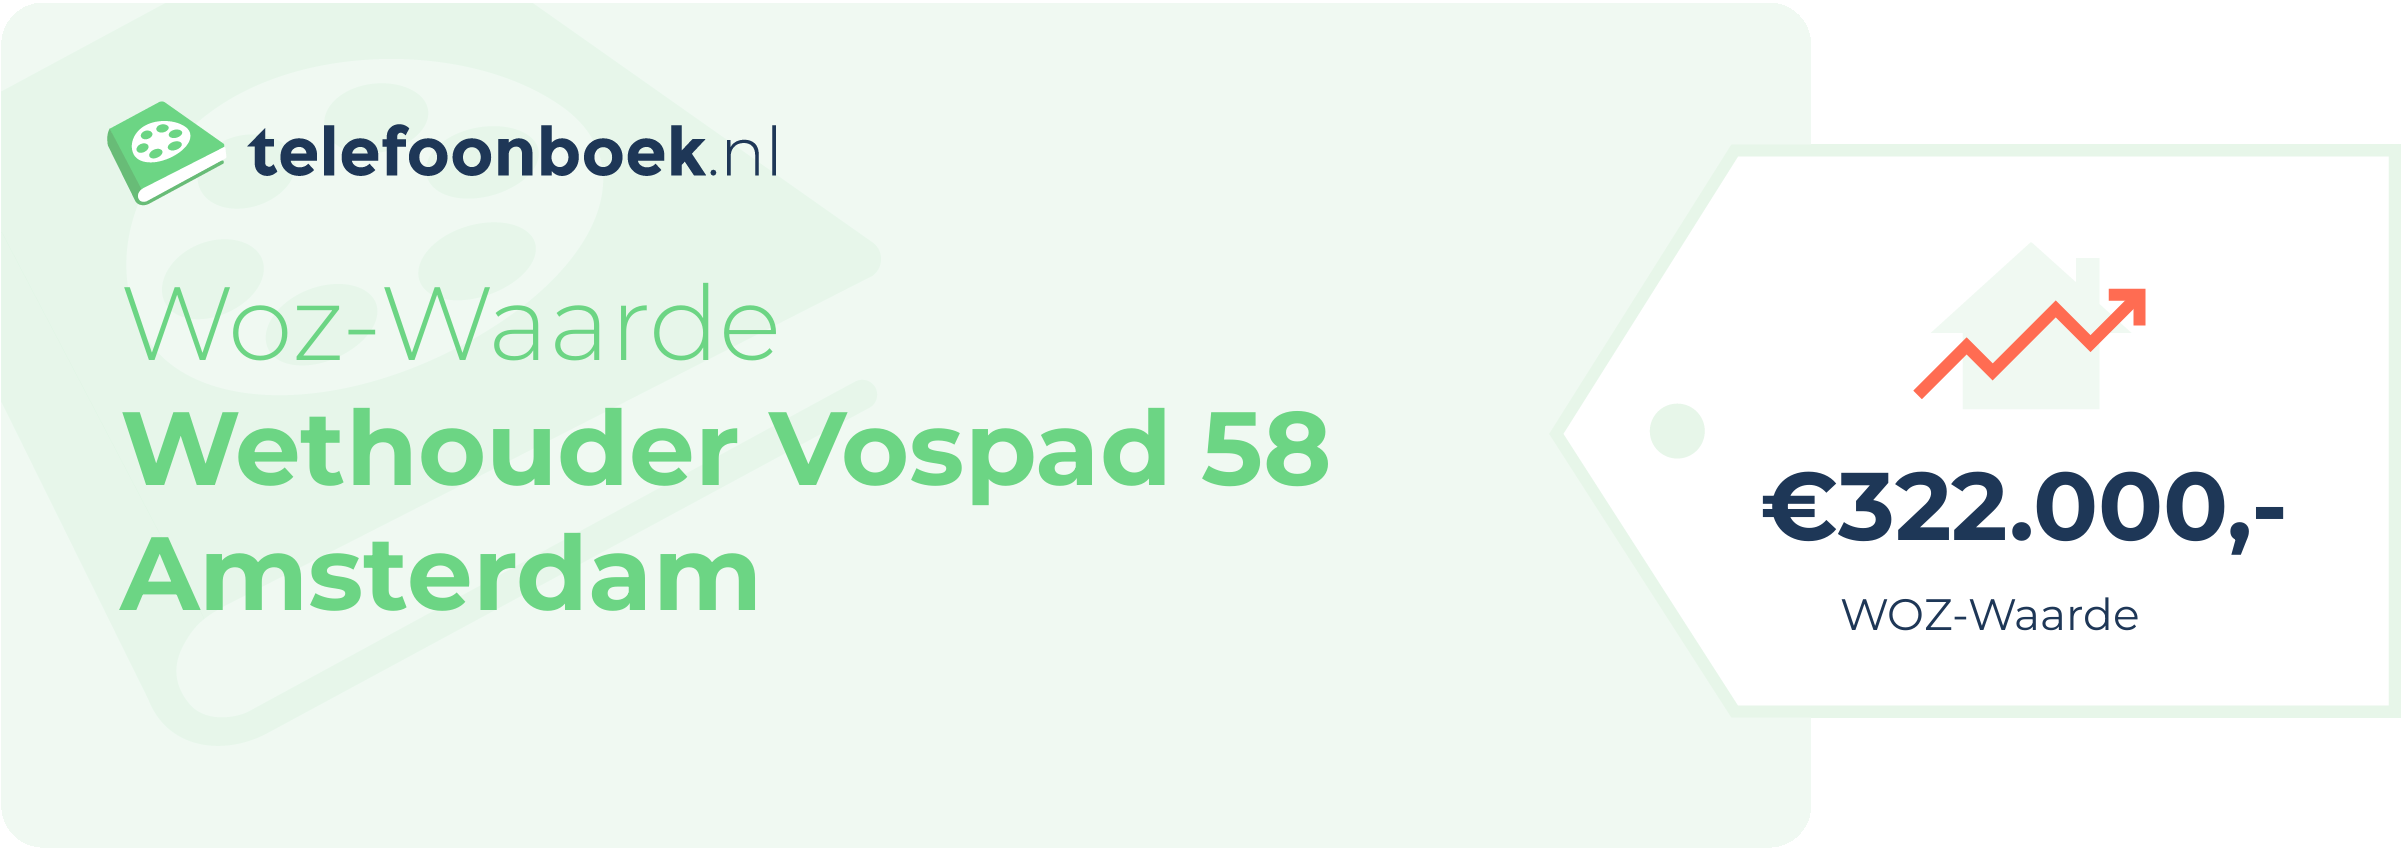 WOZ-waarde Wethouder Vospad 58 Amsterdam